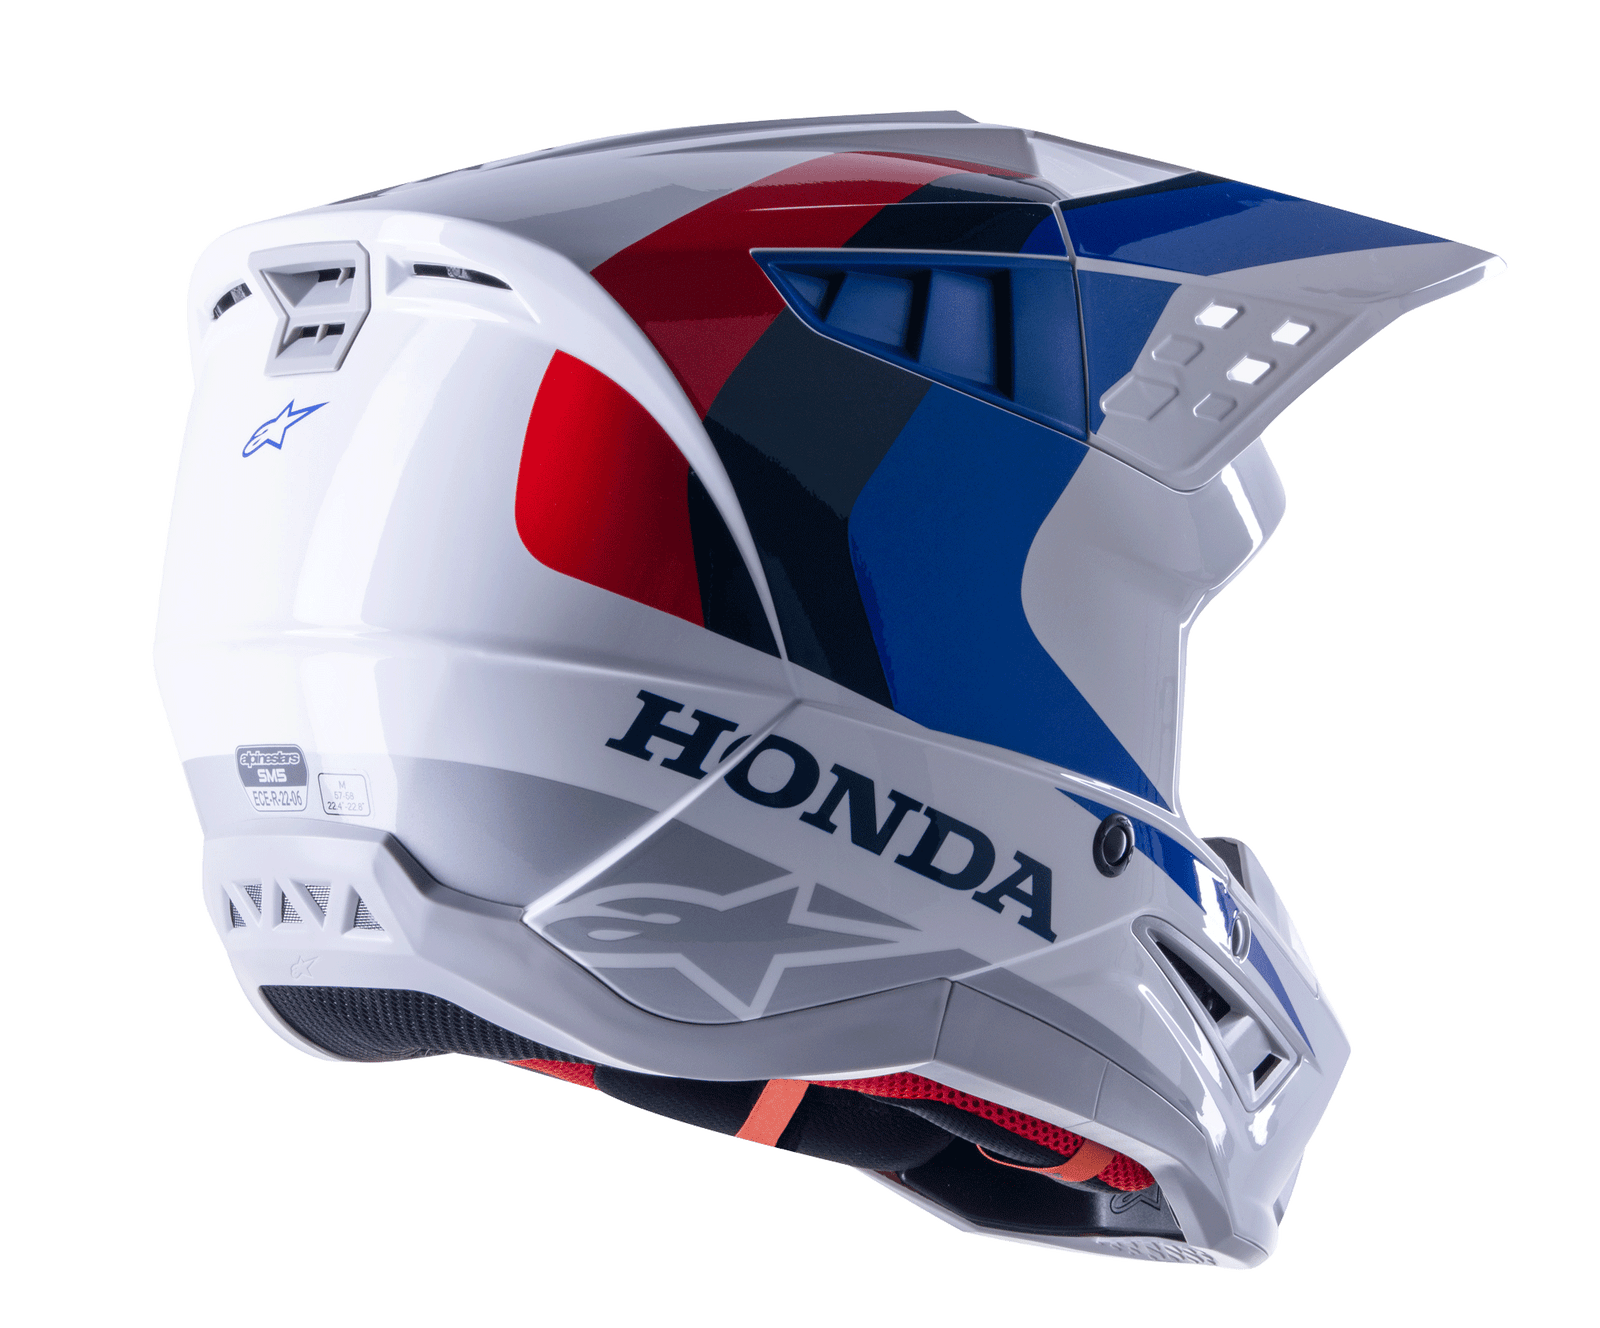 Honda SM5 Helme ECE